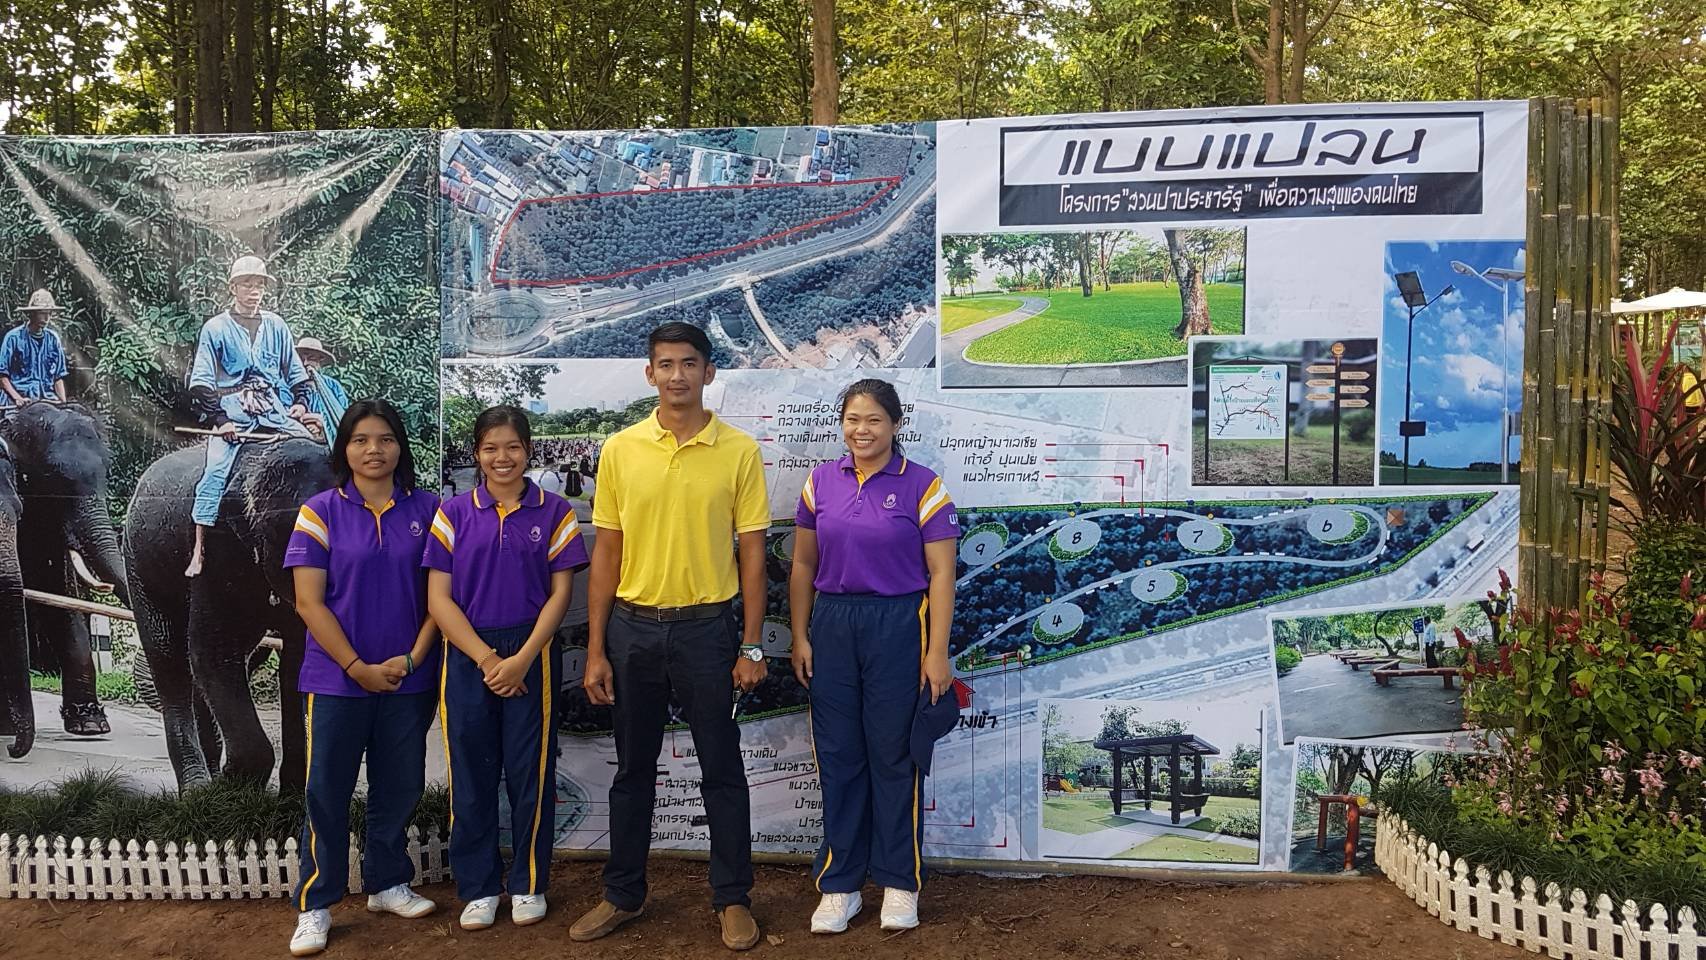  คณะเกษตรศาสตร์และทรัพยากรธรรมชาติ มหาวิทยาลัยพะเยา เข้าร่วมโครงการป่าในเมือง " สวนป่าประชารัฐ เพื่อความสุขของคนไทย "